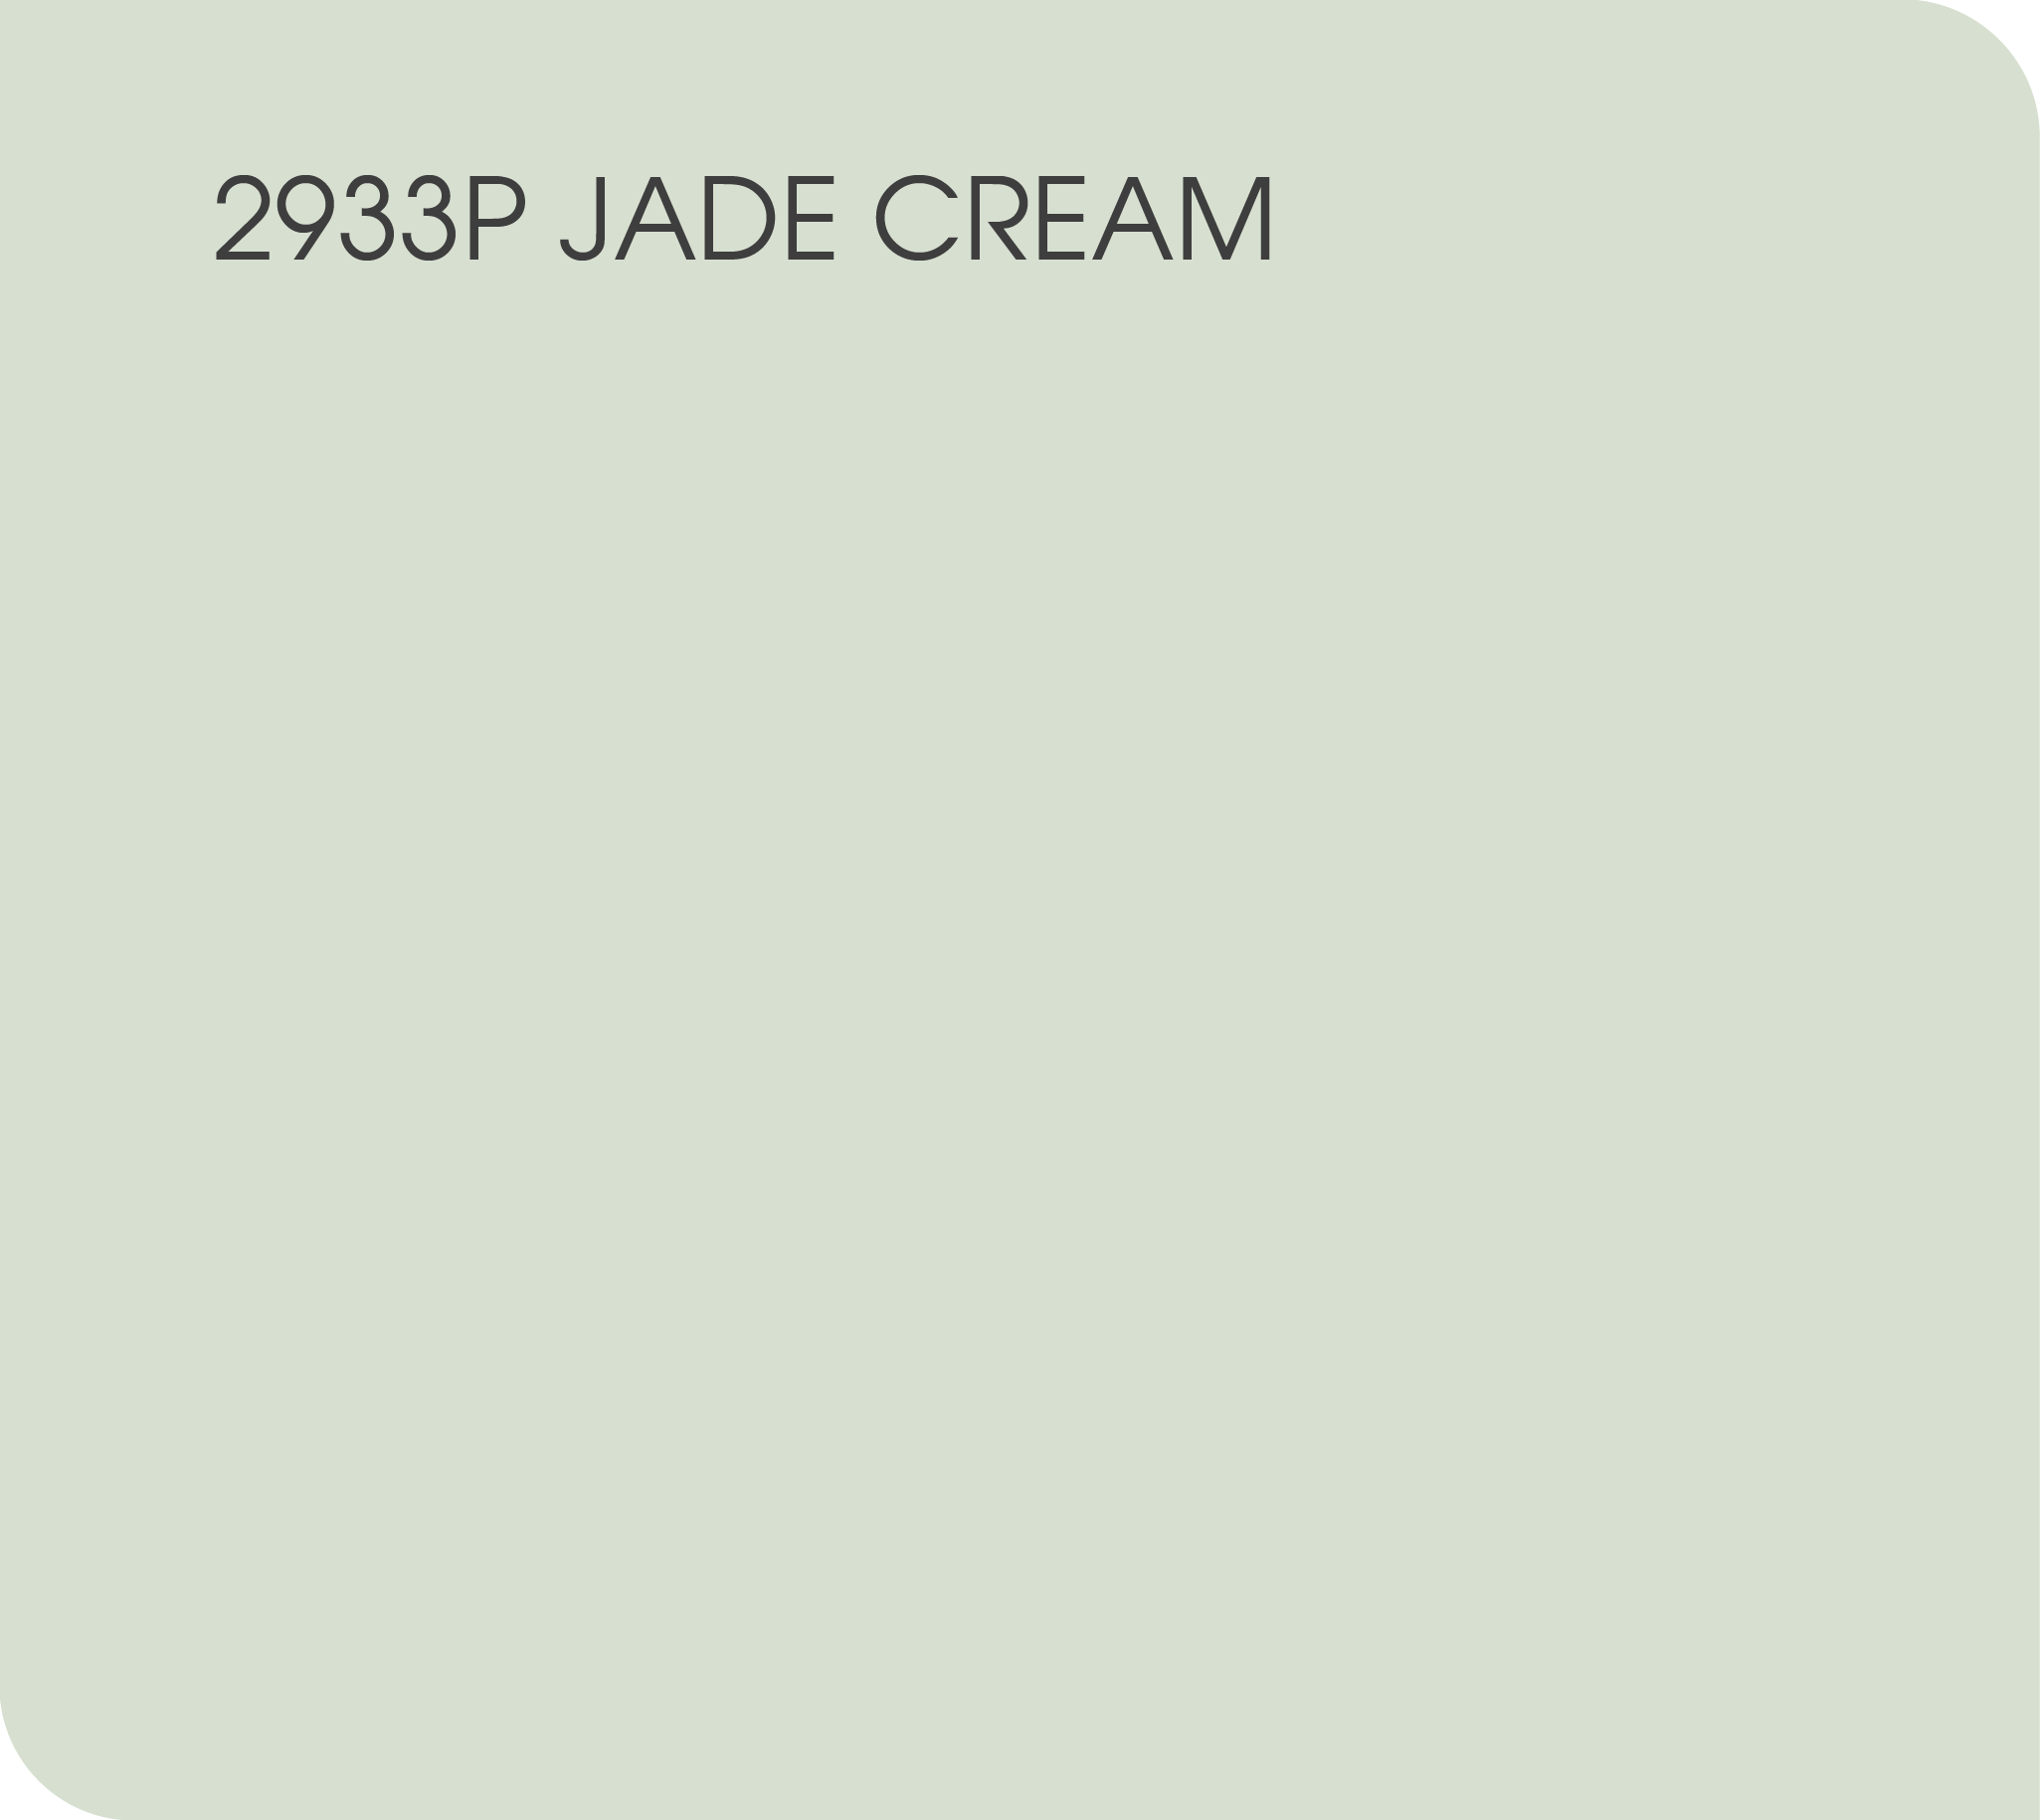 2933P jade cream